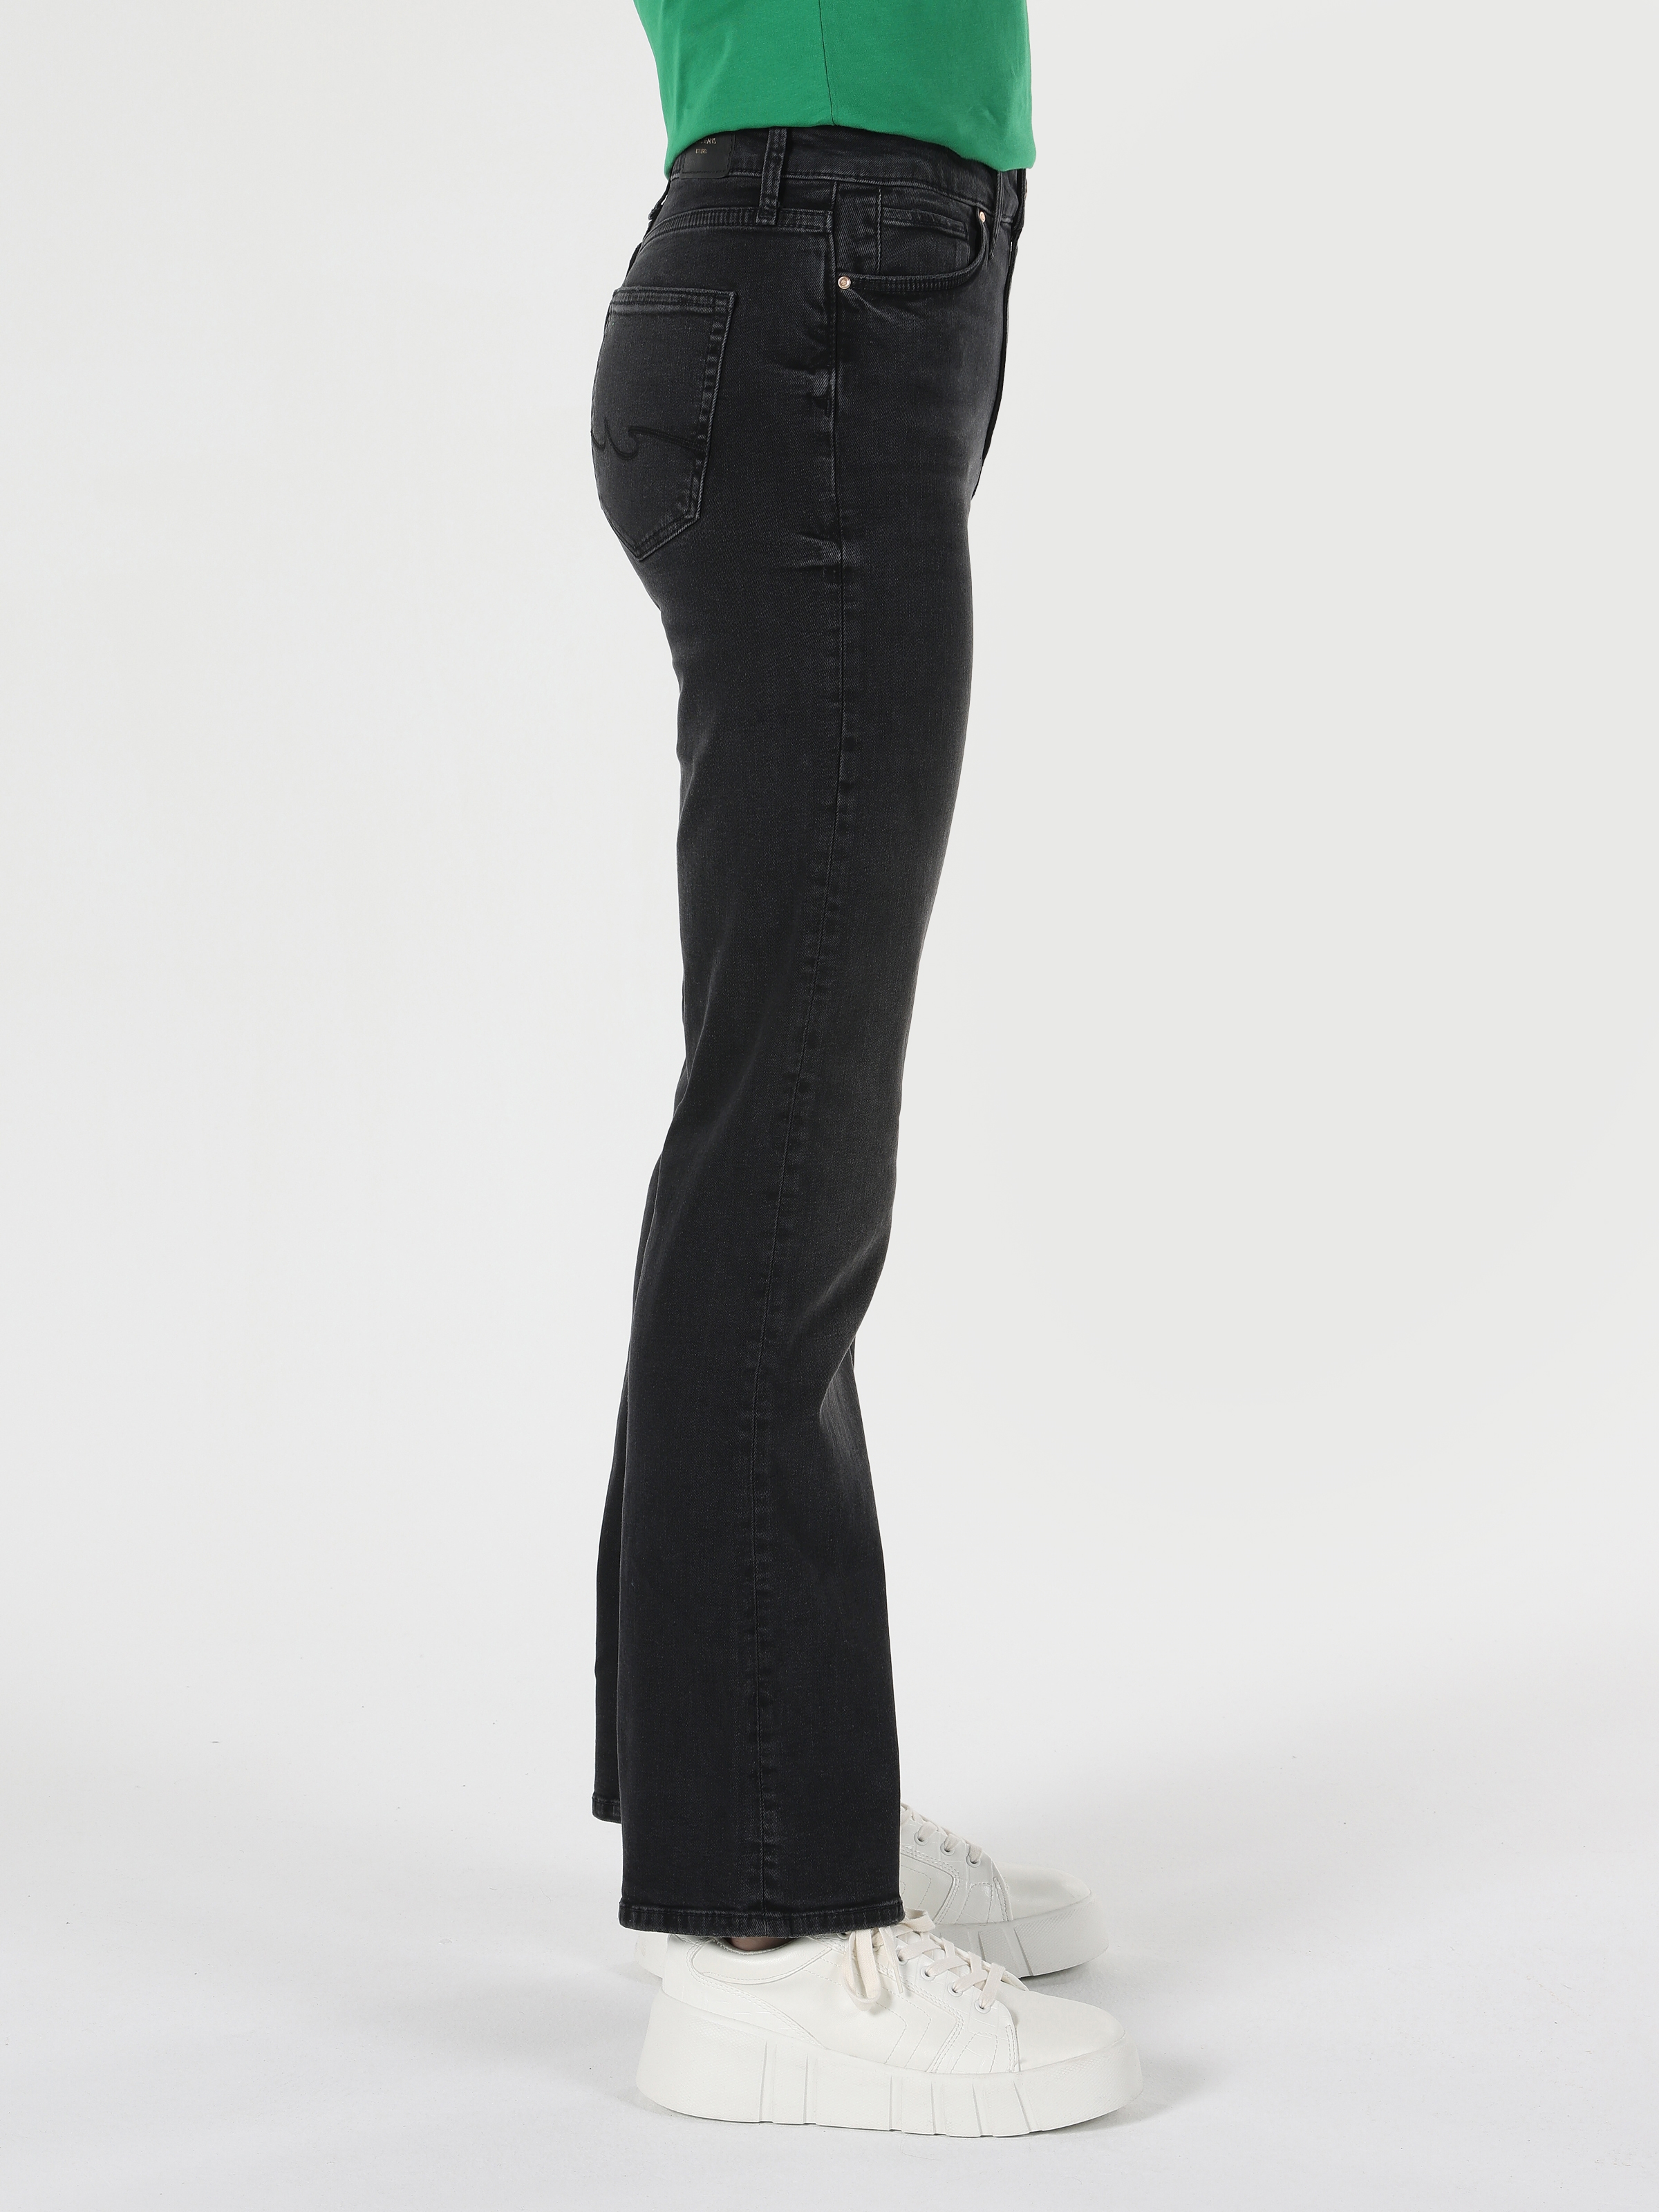 Afficher les détails de Pantalon En Jean Gris Pour Femmes, Coupe Régulière, Taille Normale, Jambes Larges, 791 Monıca